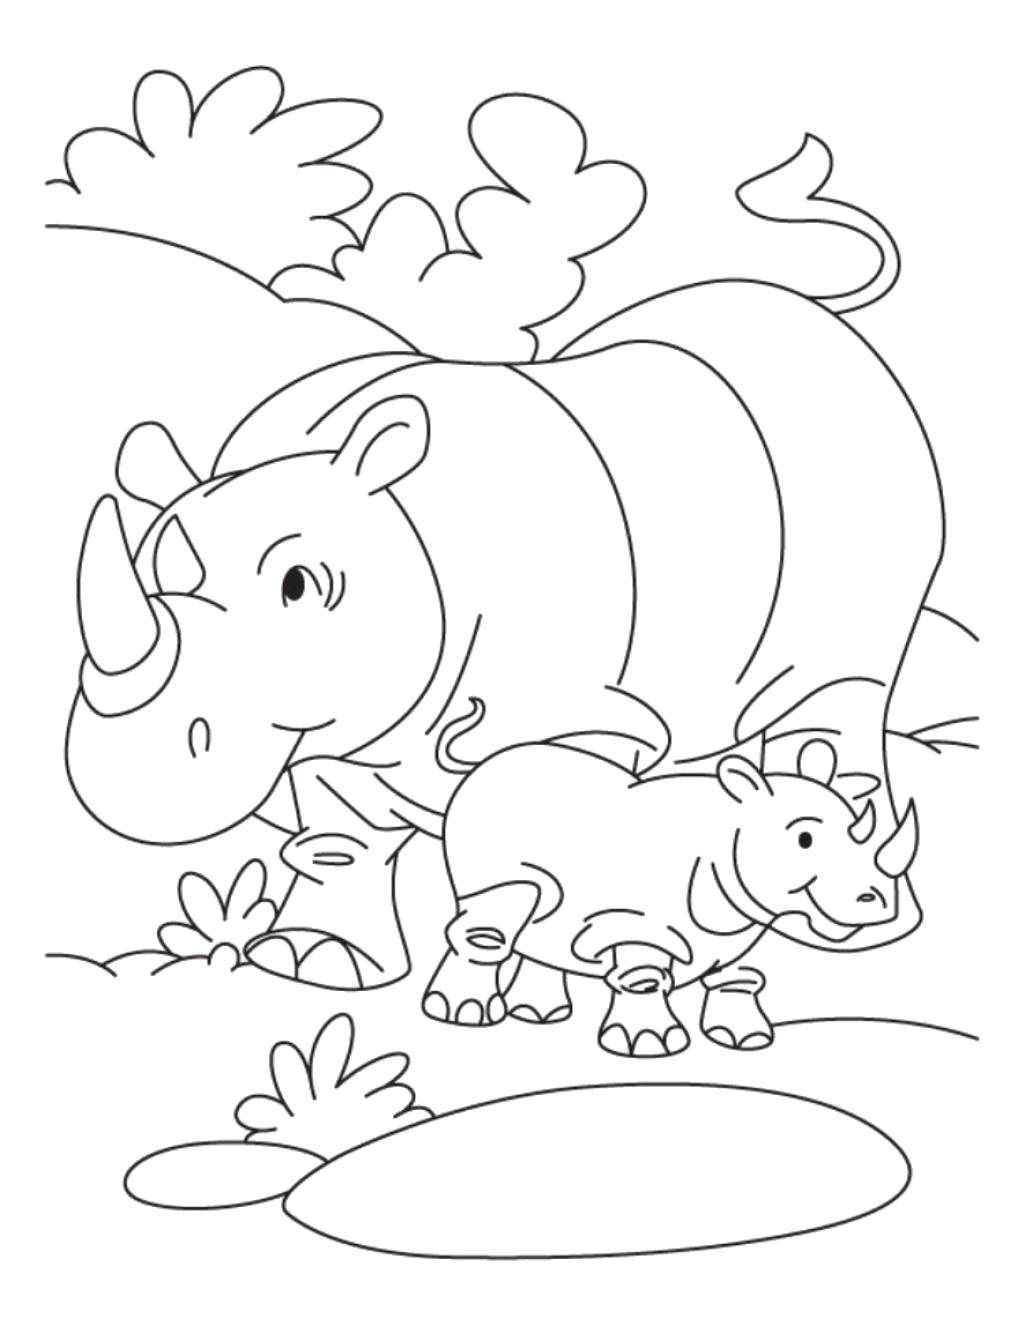 Раскраска носорога для детей (носорог)